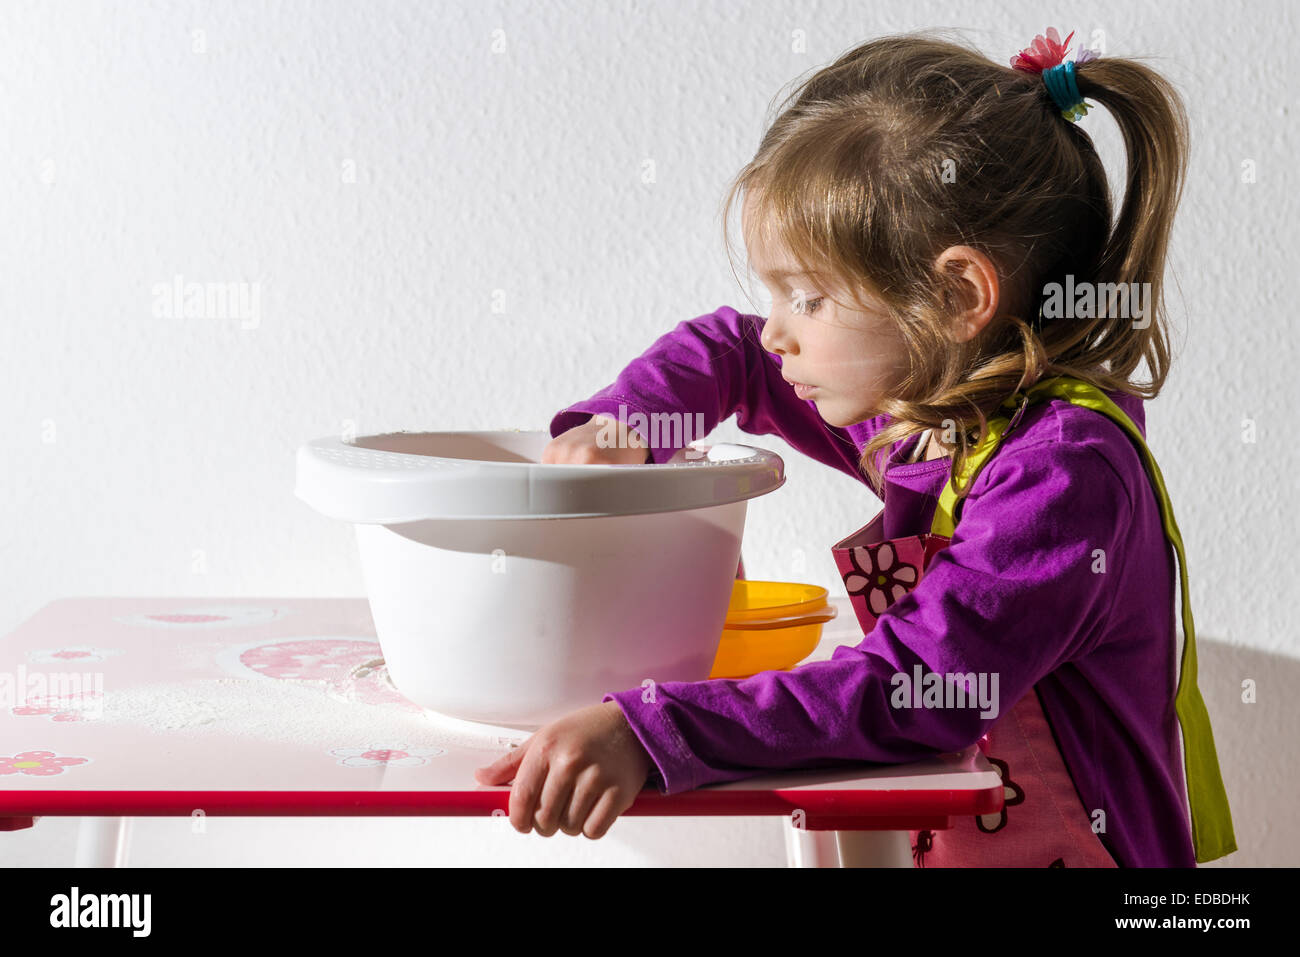 Fille, 3 ans, la cuisson, en remuant les ingrédients dans un bol blanc Banque D'Images